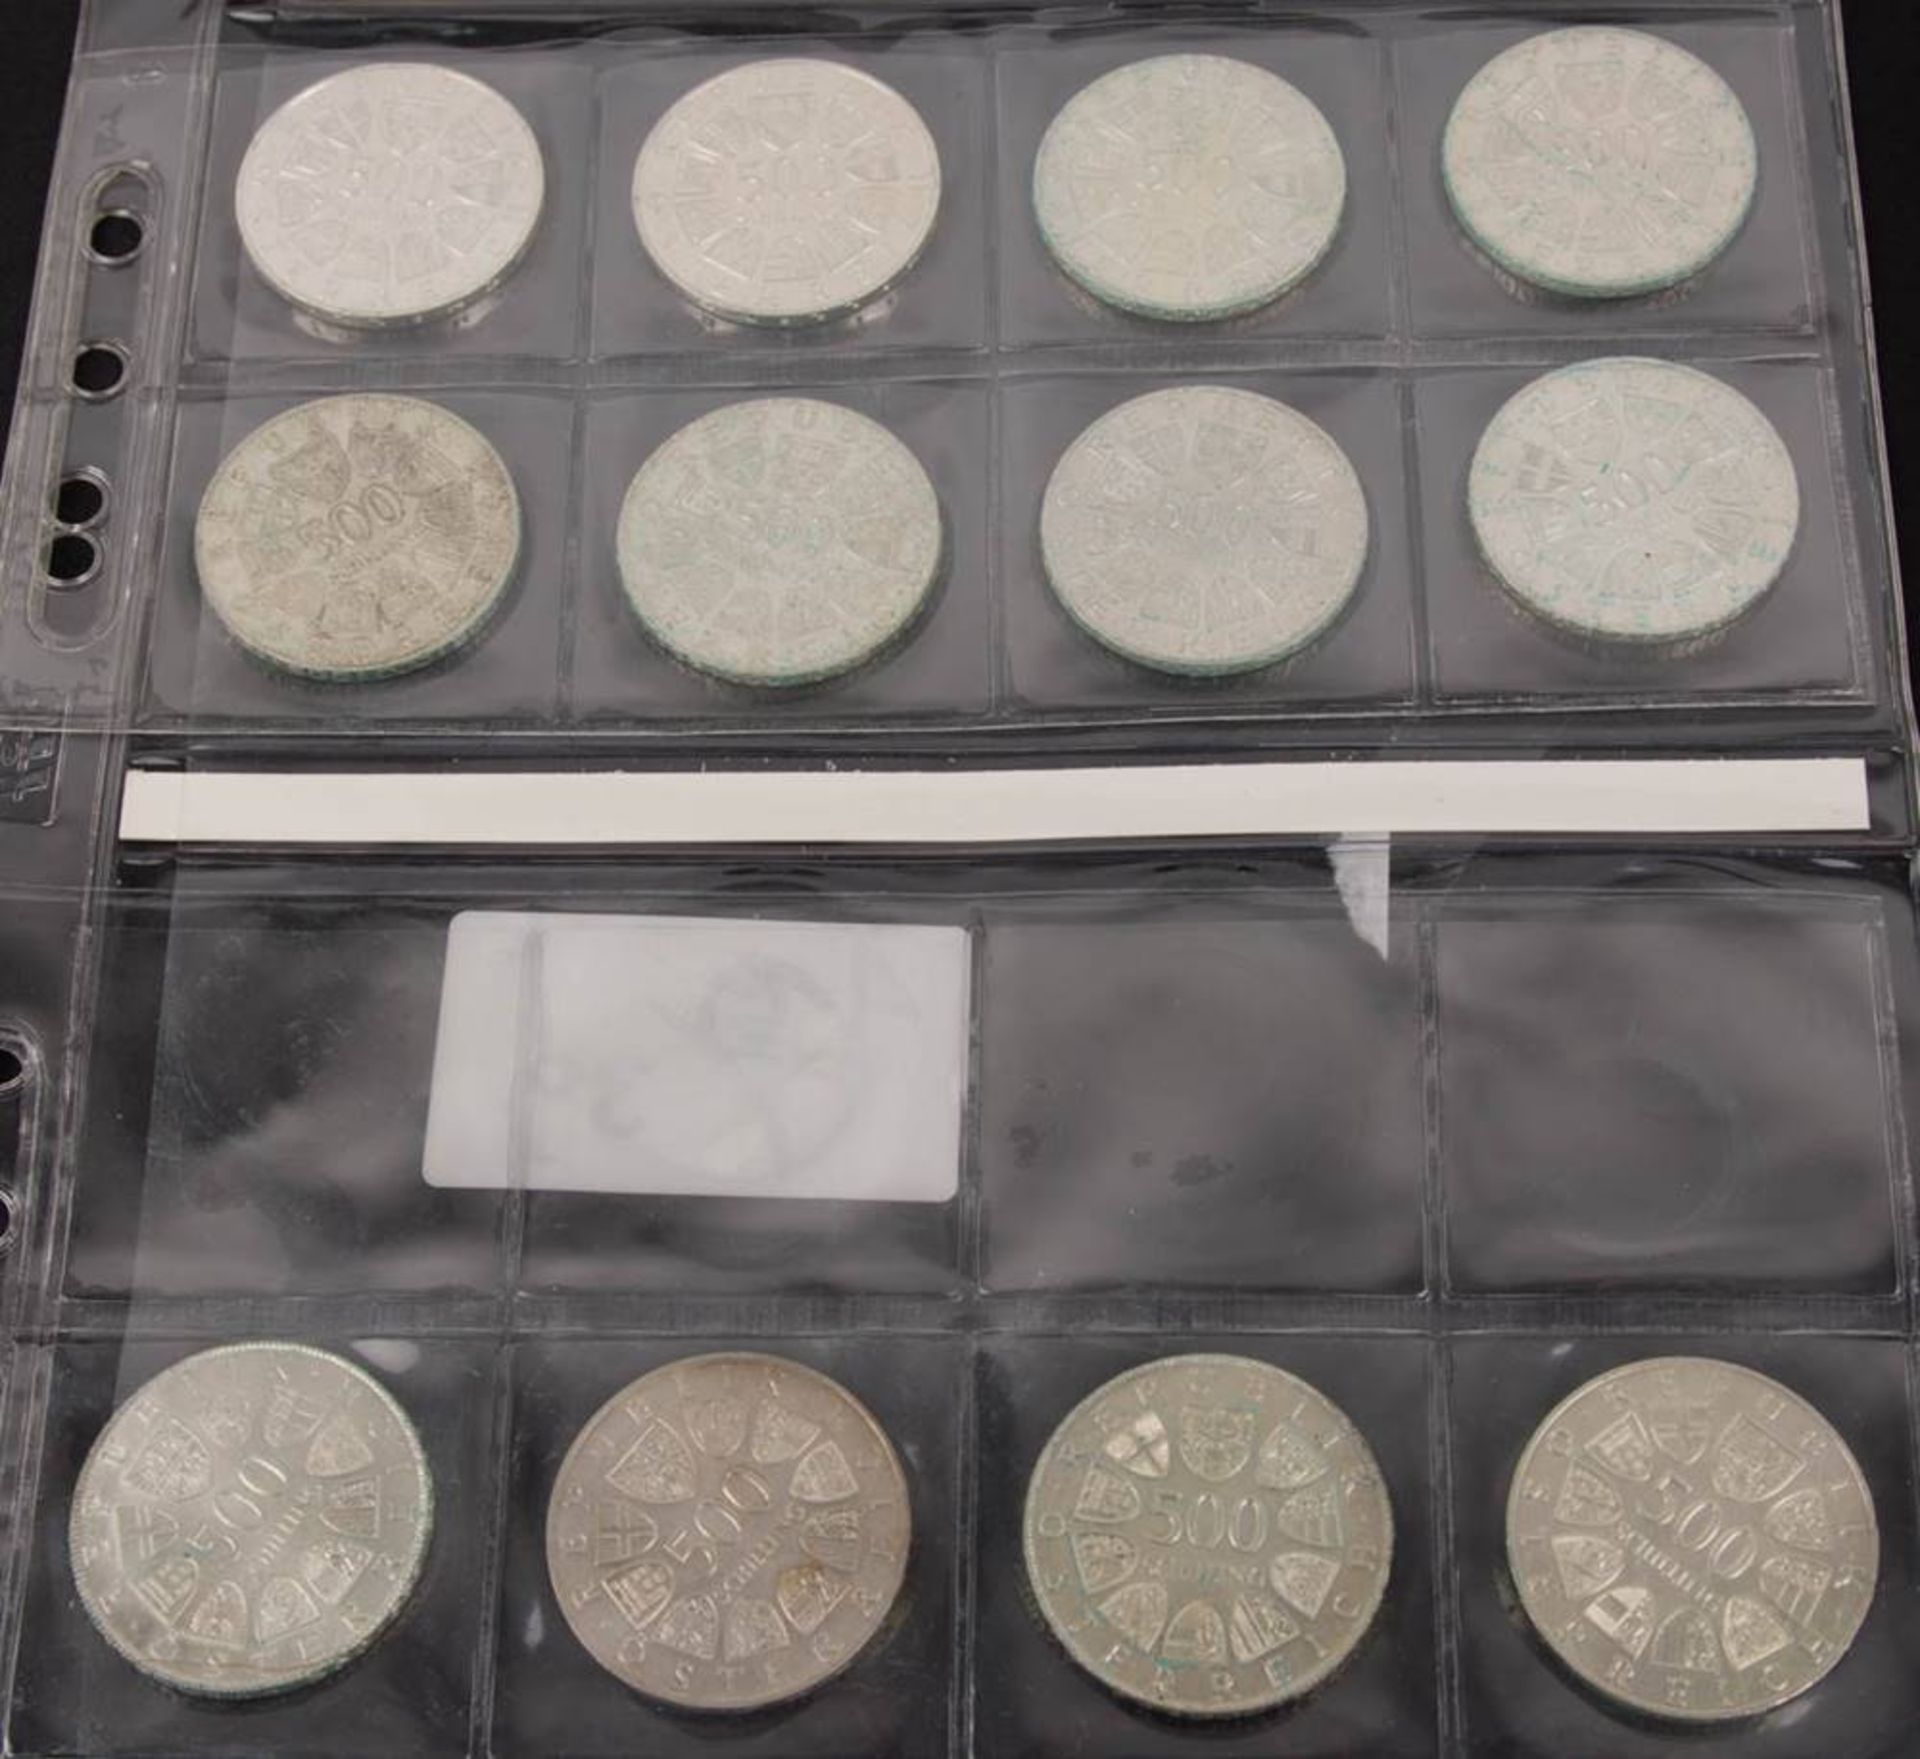 Österreich: Silbermünzen 2. Republik 12x500 ATS.